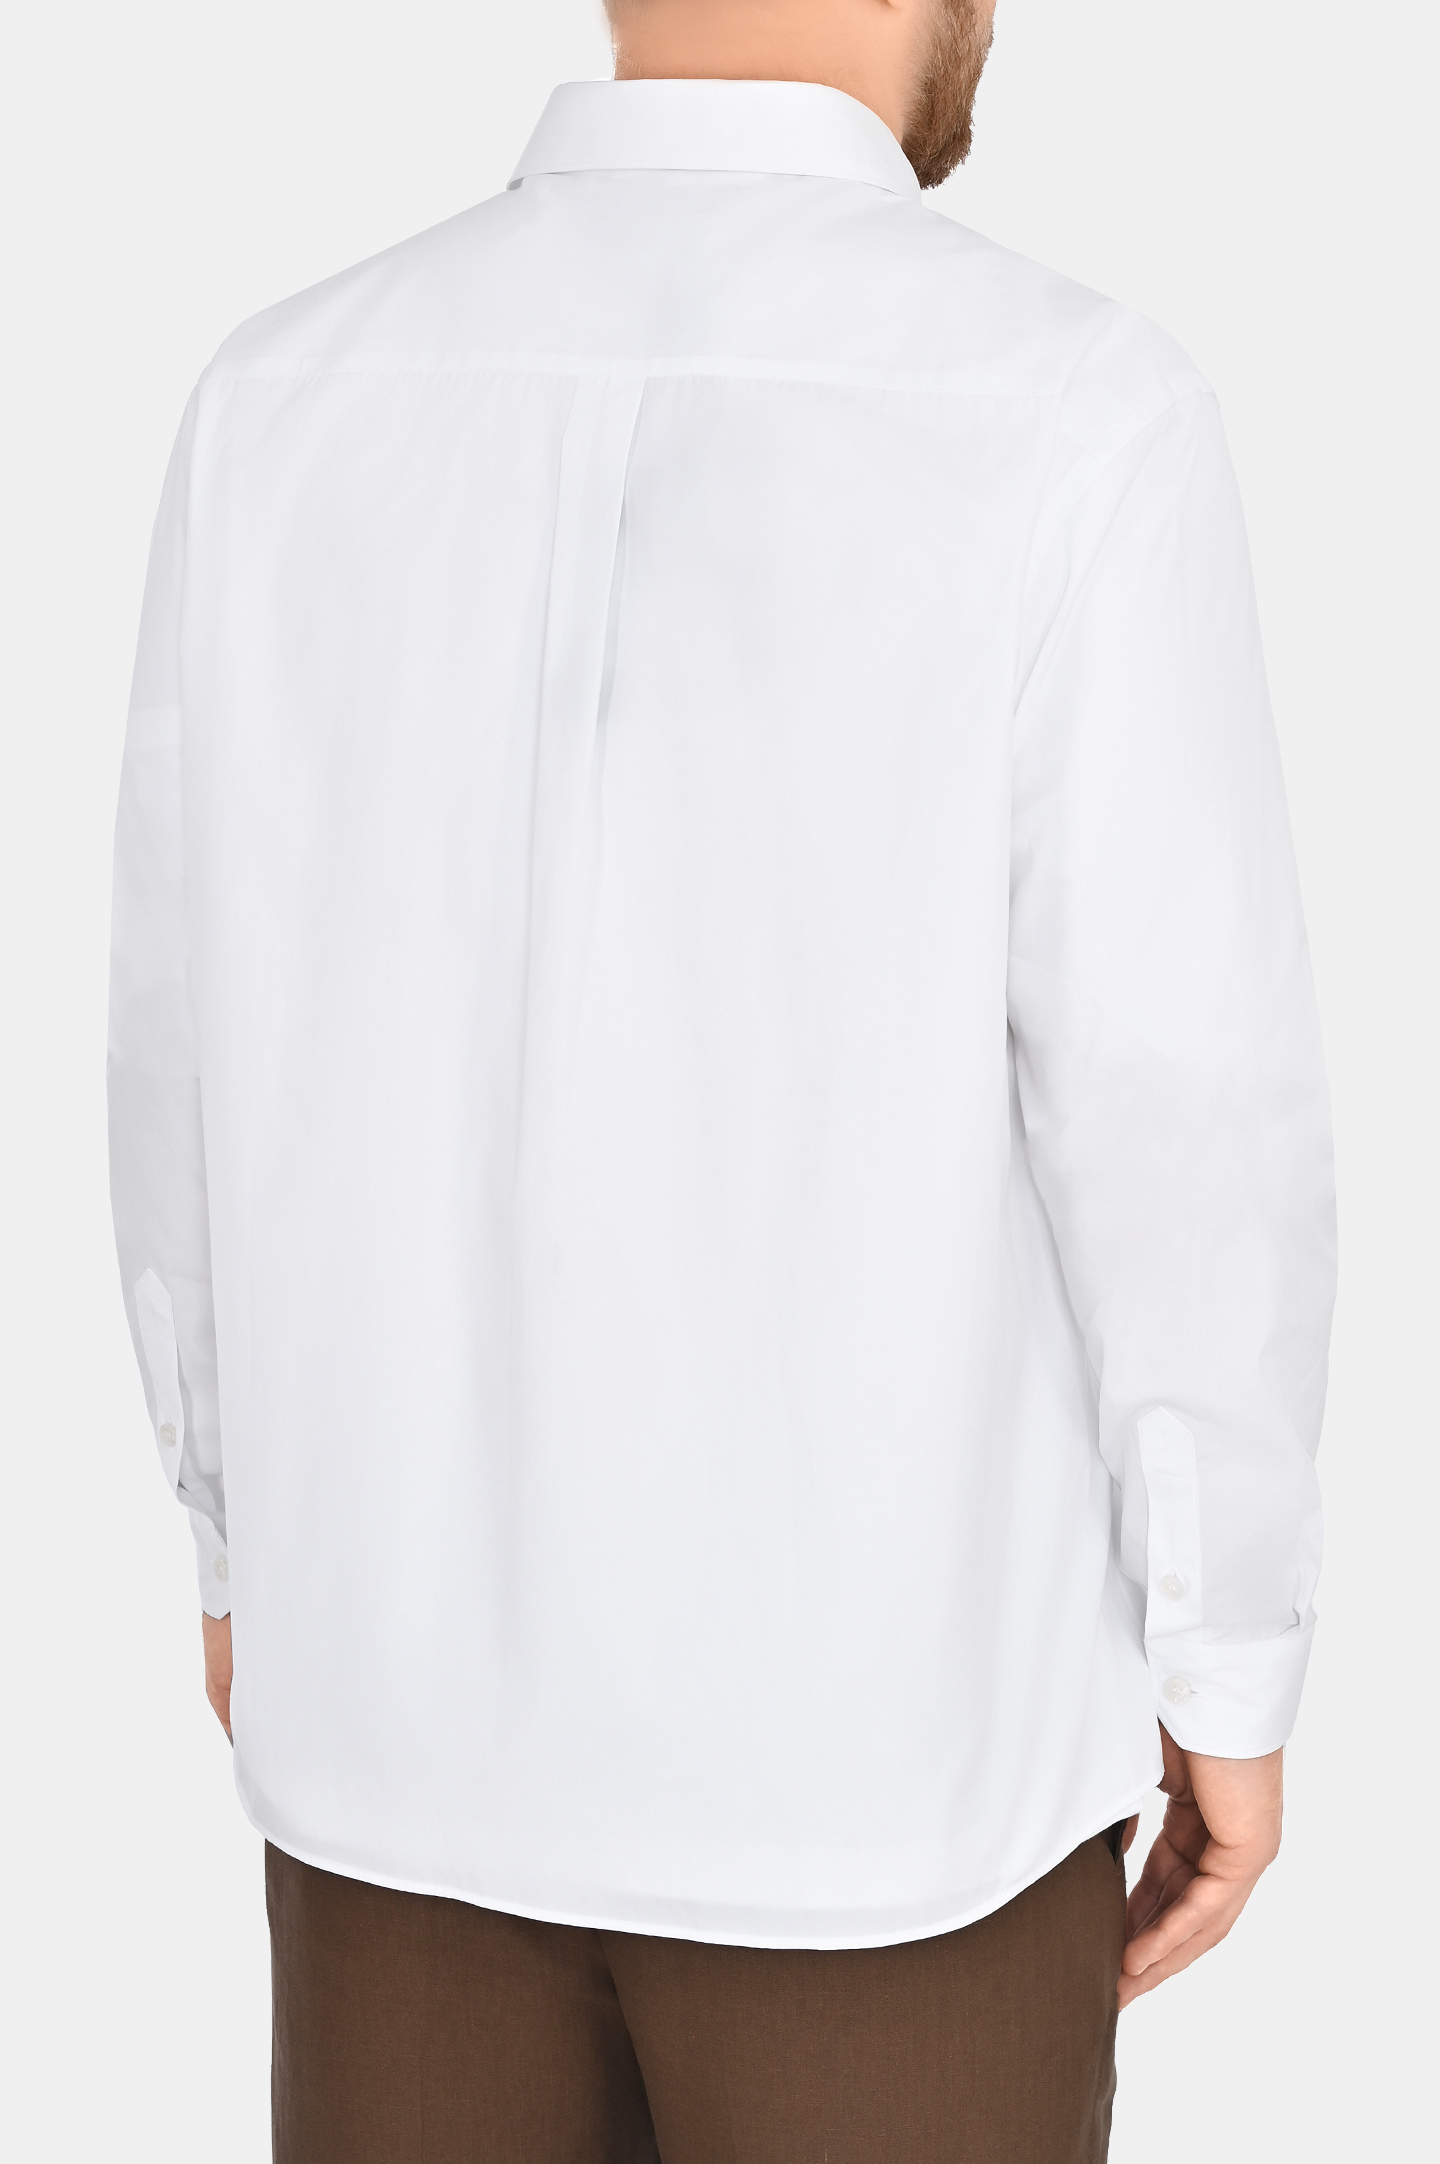 Рубашка с логотипом DOLCE & GABBANA G5JG4T FU5U8, цвет: Белый, Мужской